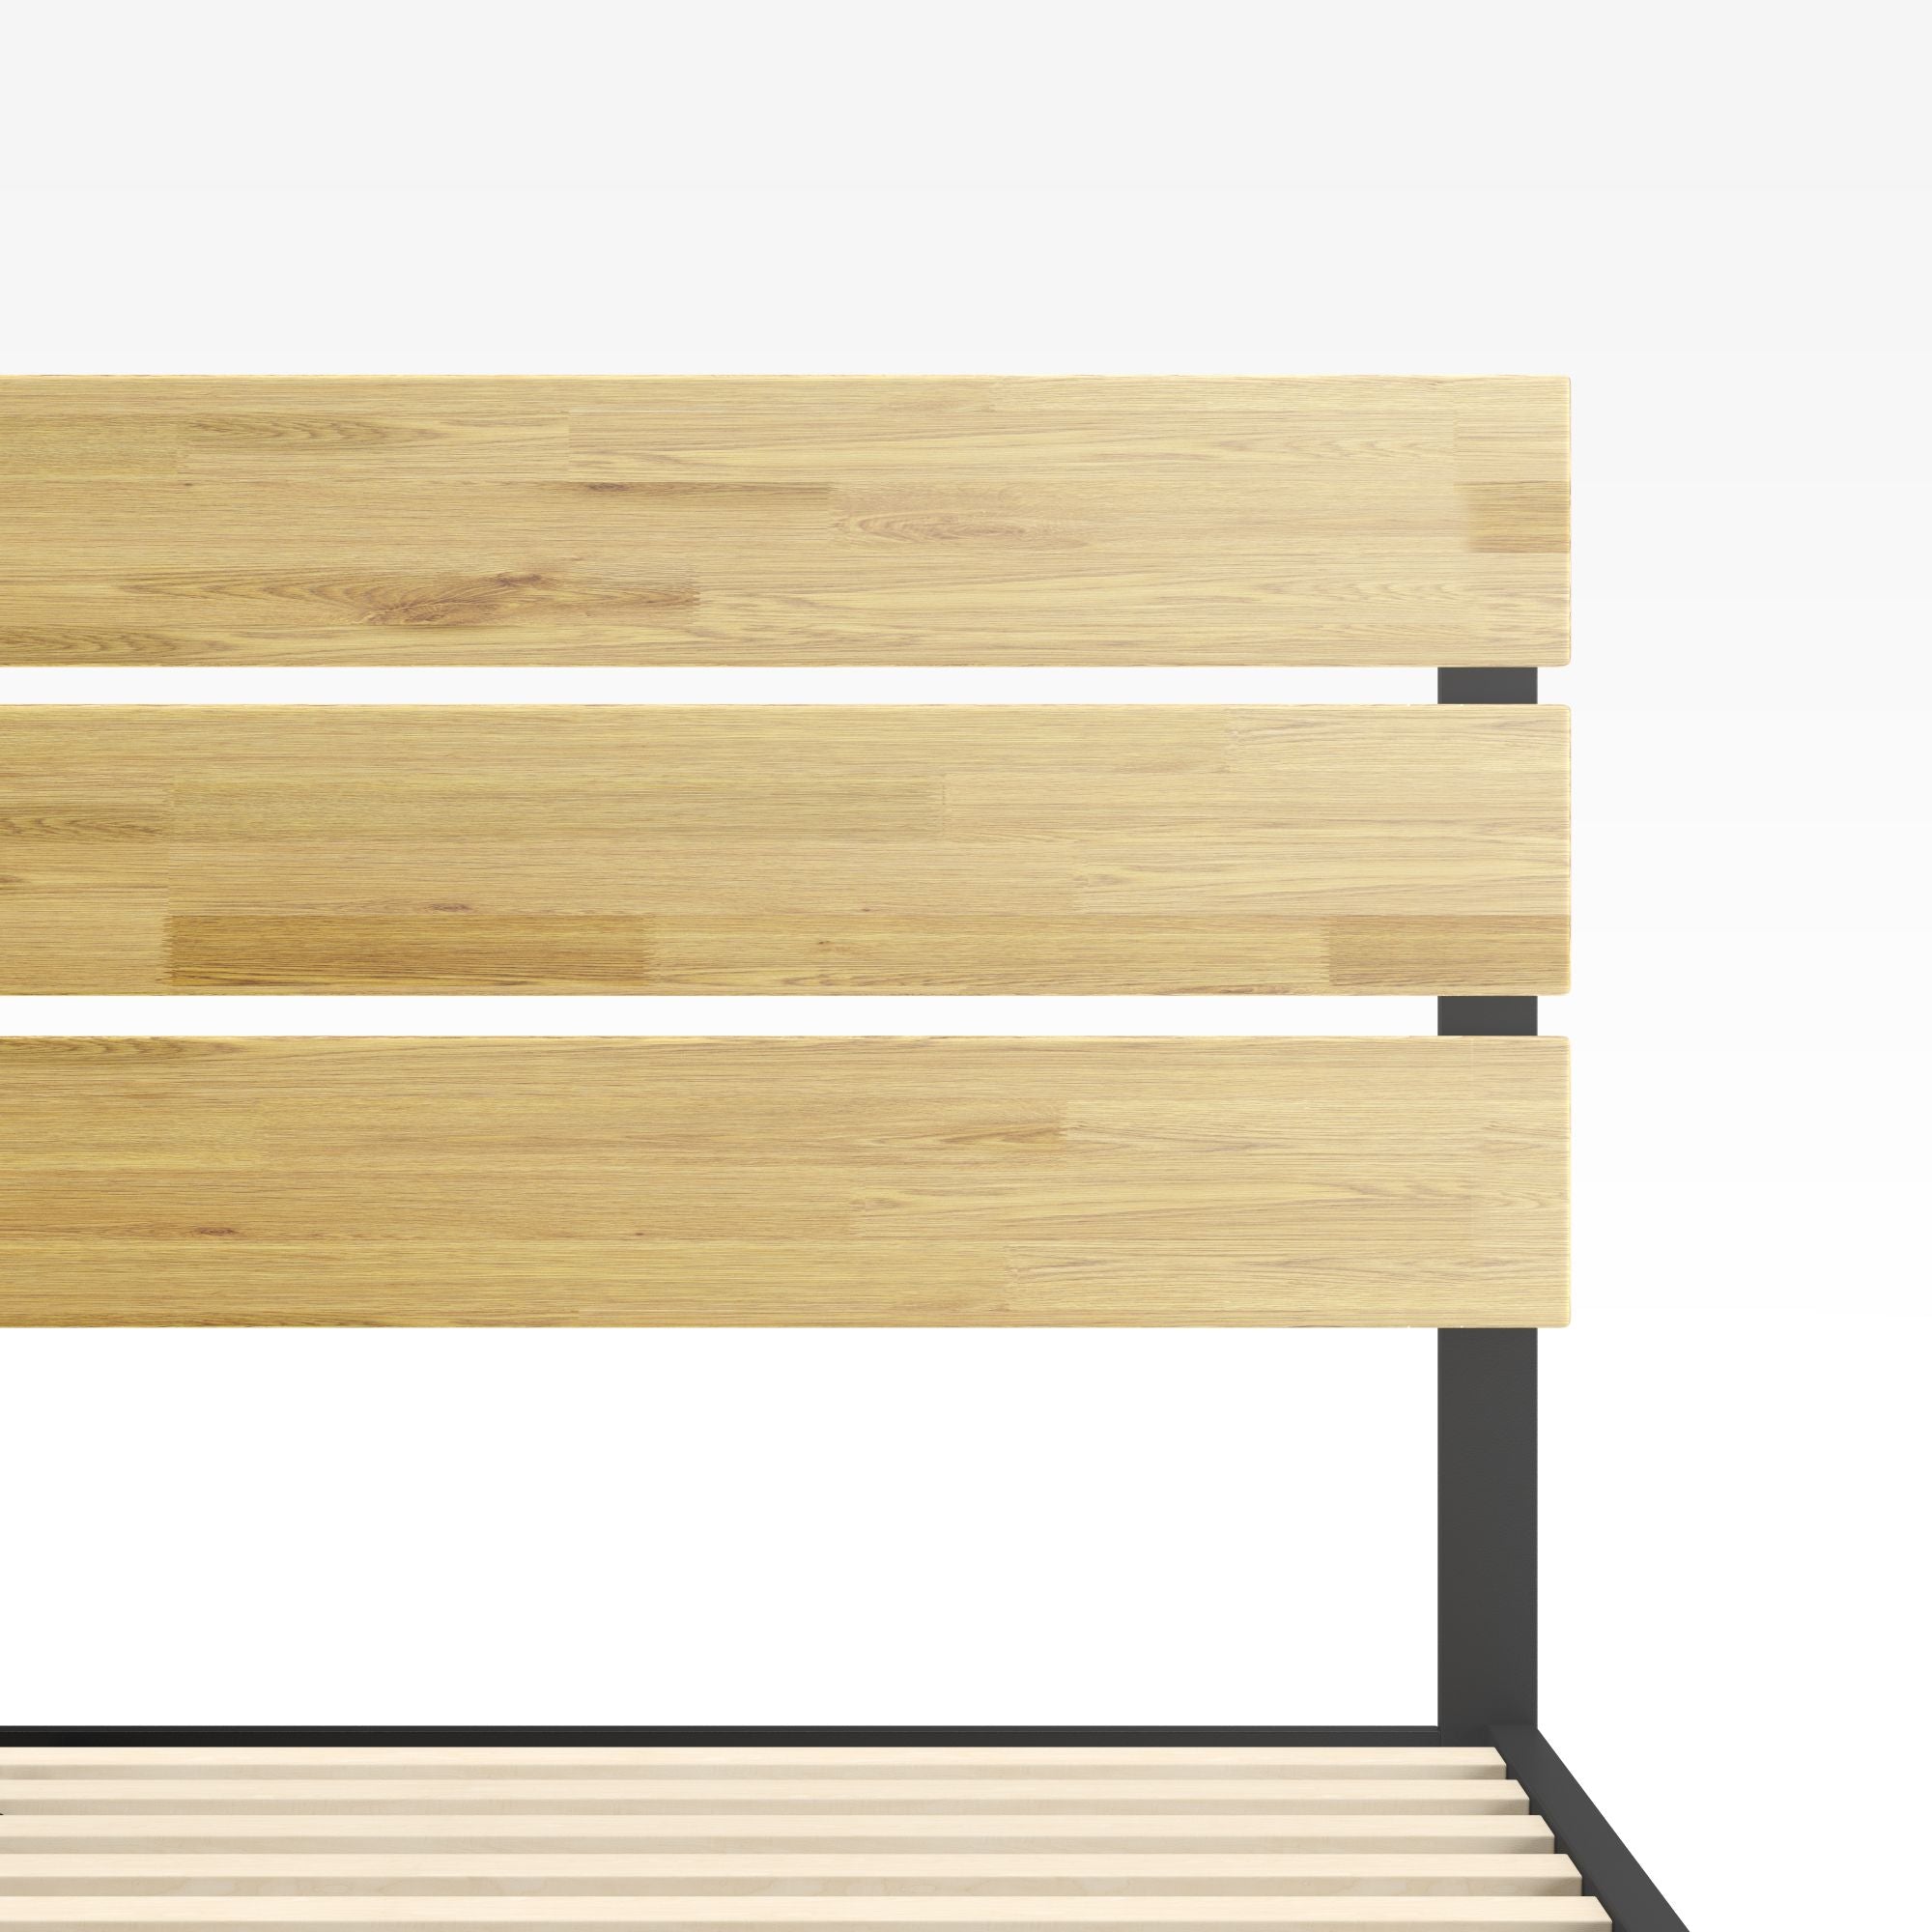 Paul Metal and Wood Platform Bed Frame Headboard Detail1